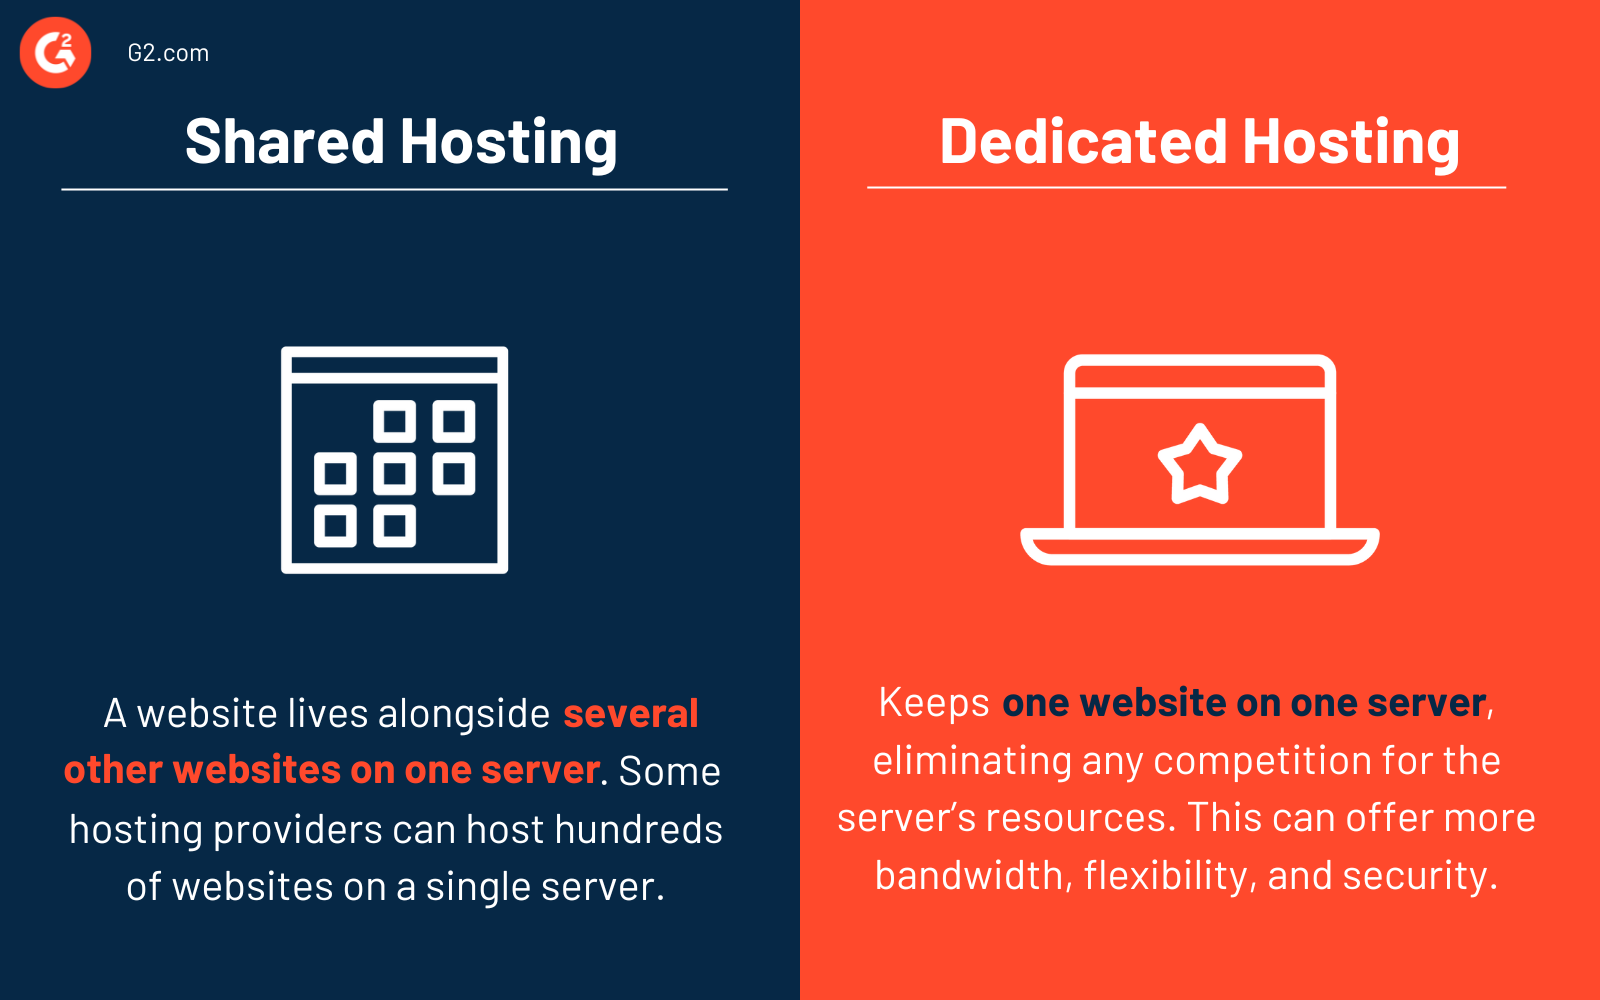 shared hosting vs. dedicated hosting